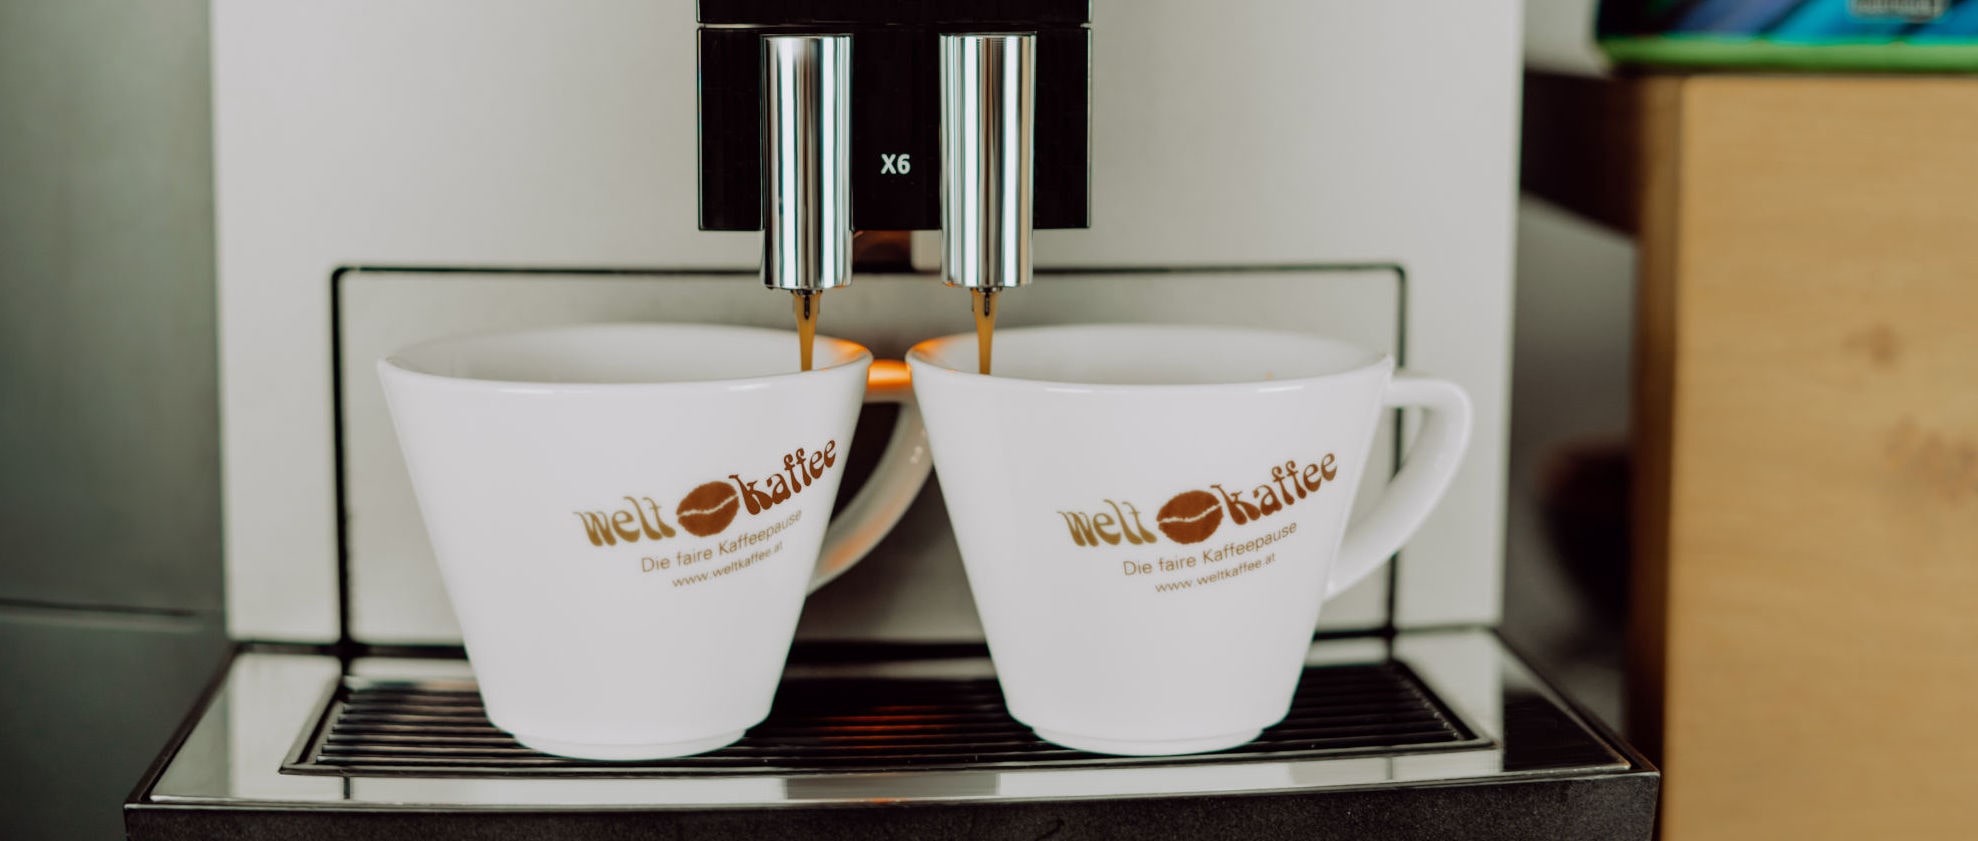 Bester Kaffeegenuss - biologisch und fair Trade - mit einem Kaffeesystem von Weltkaffee.